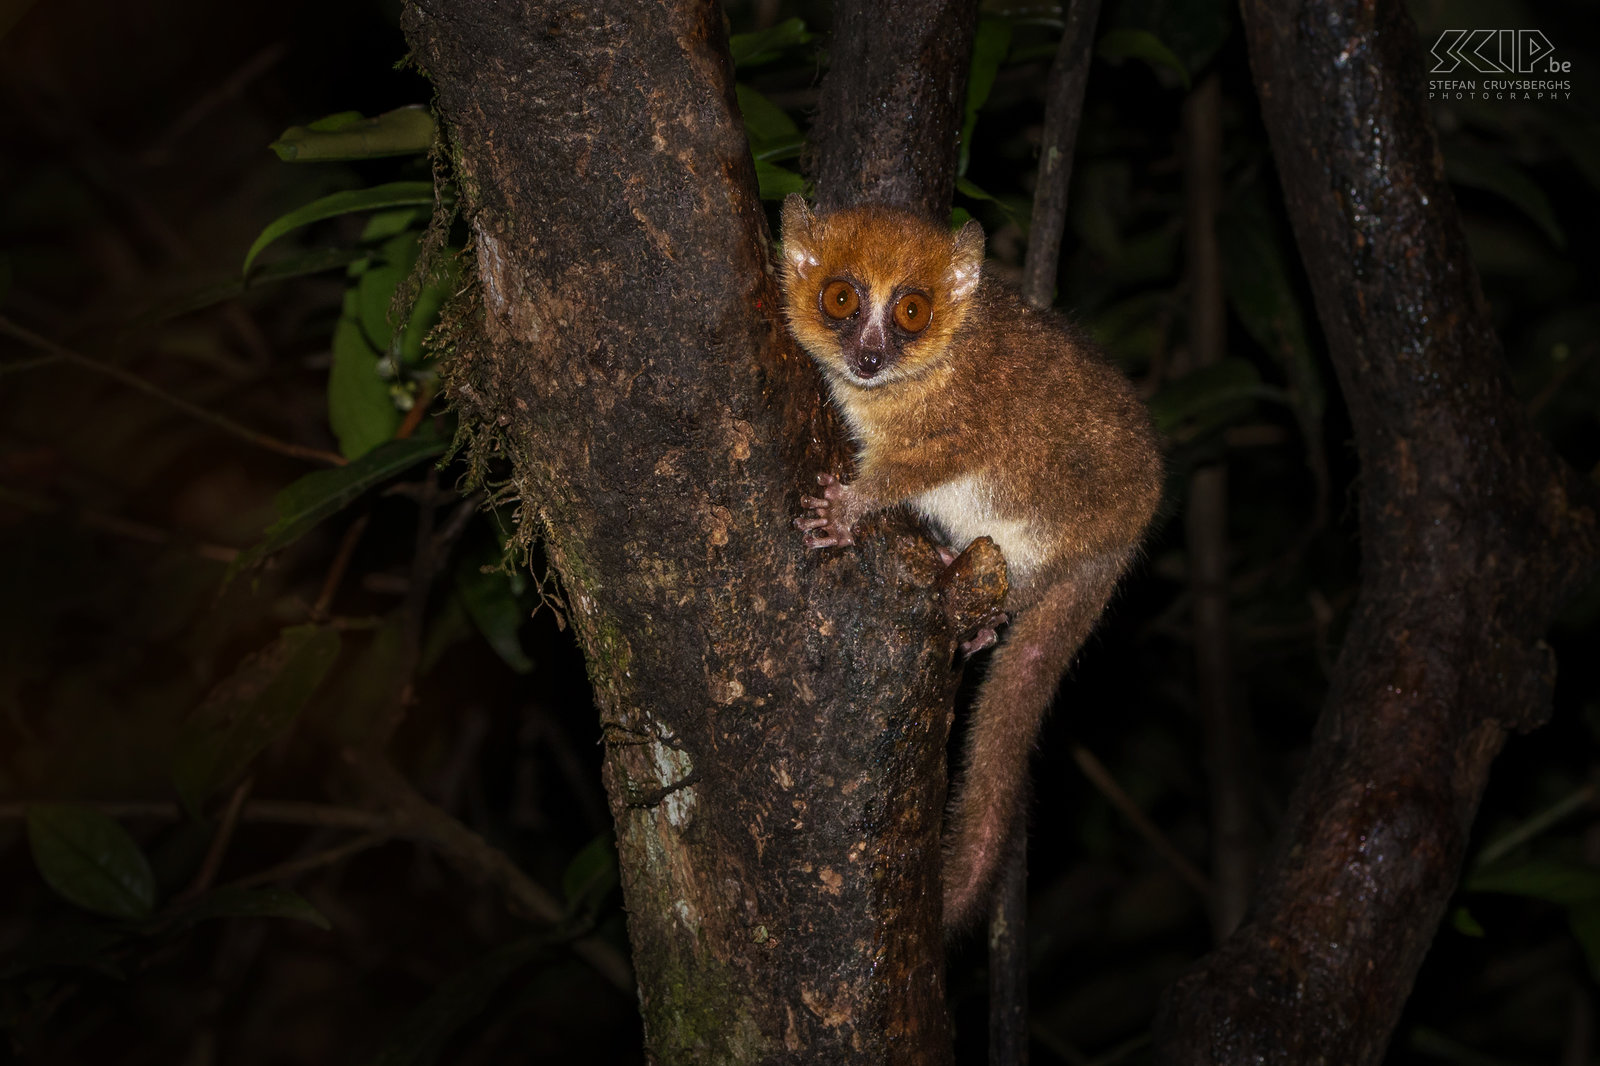 Ranomafana - Rode muismaki De rode muismaki (Brown mouse lemur, Microcebus rufus) is niet alleen de kleinste maki maar ook ook een van de kleinste primaten ter wereld.  Stefan Cruysberghs